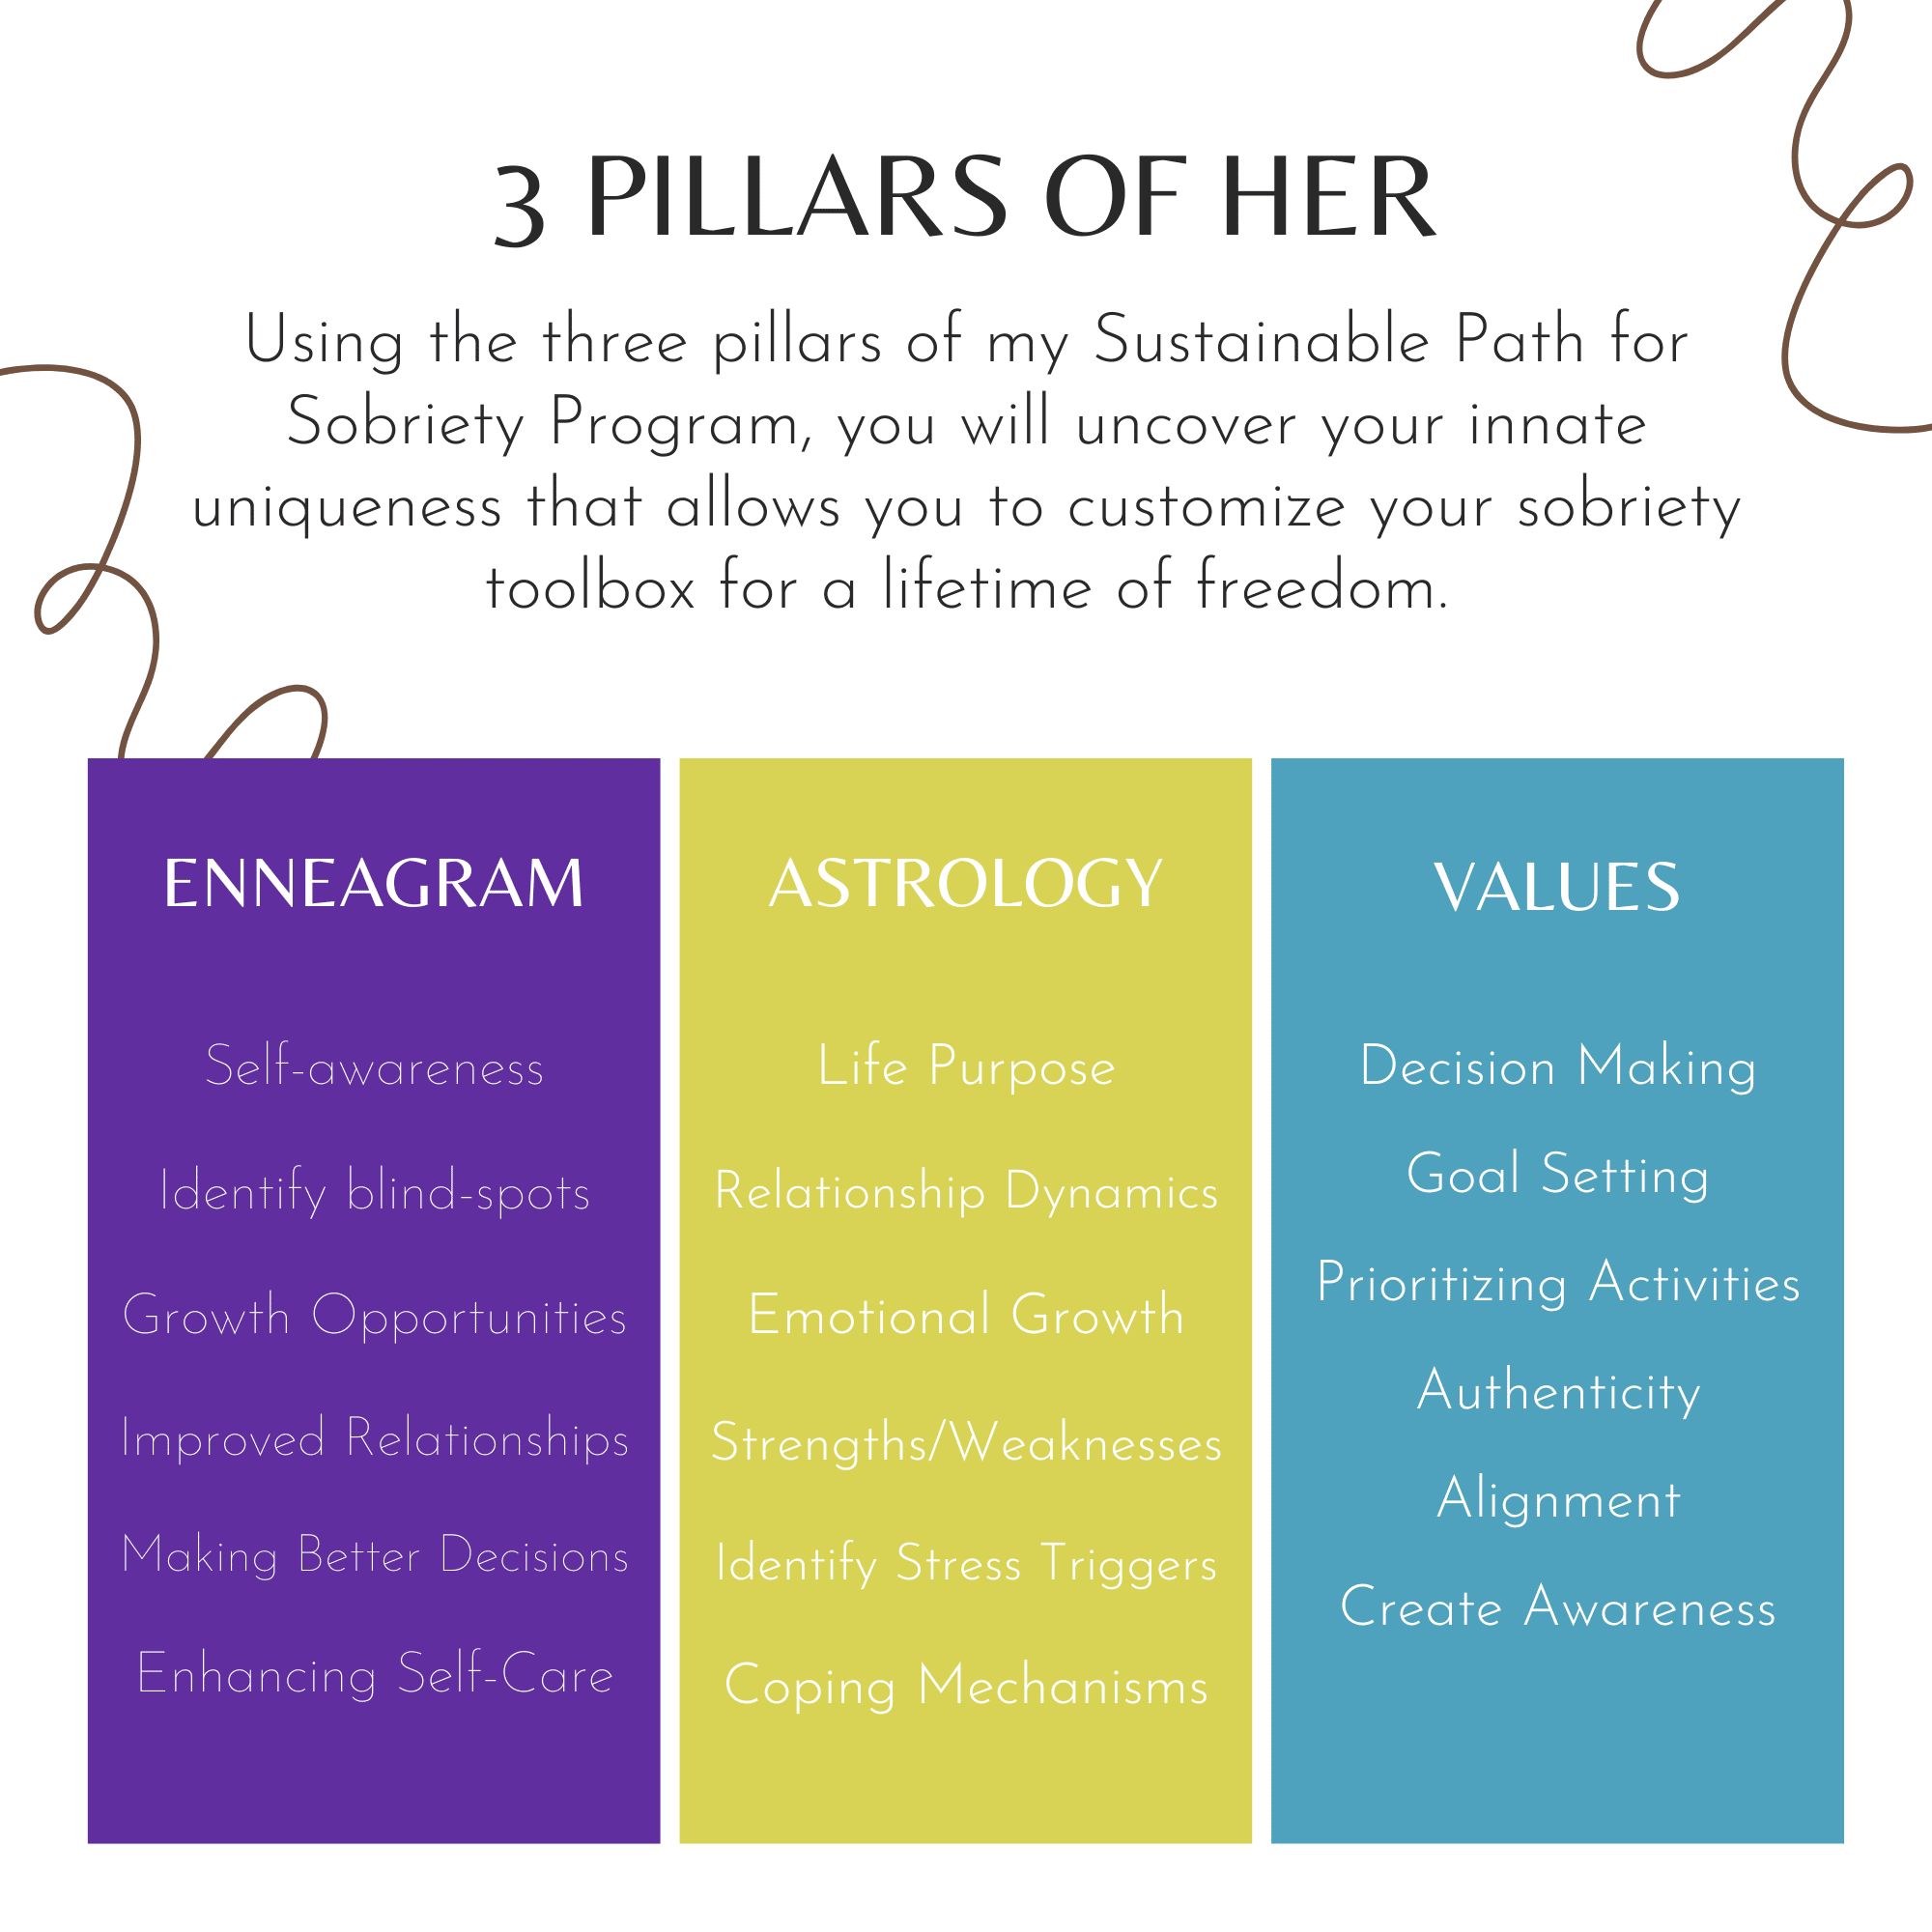 3 Pillars of Her